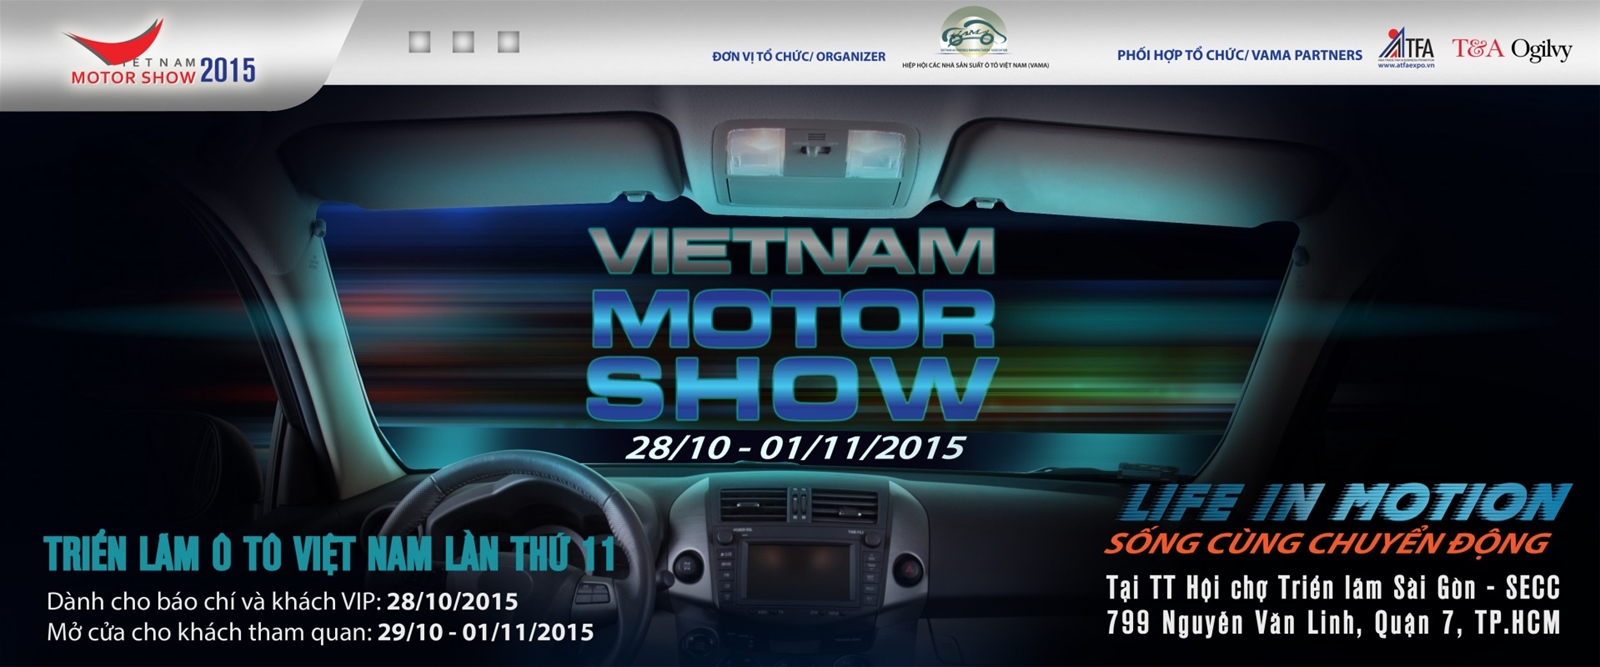 Chuyển động cùng Việt Nam Motors Show 2015